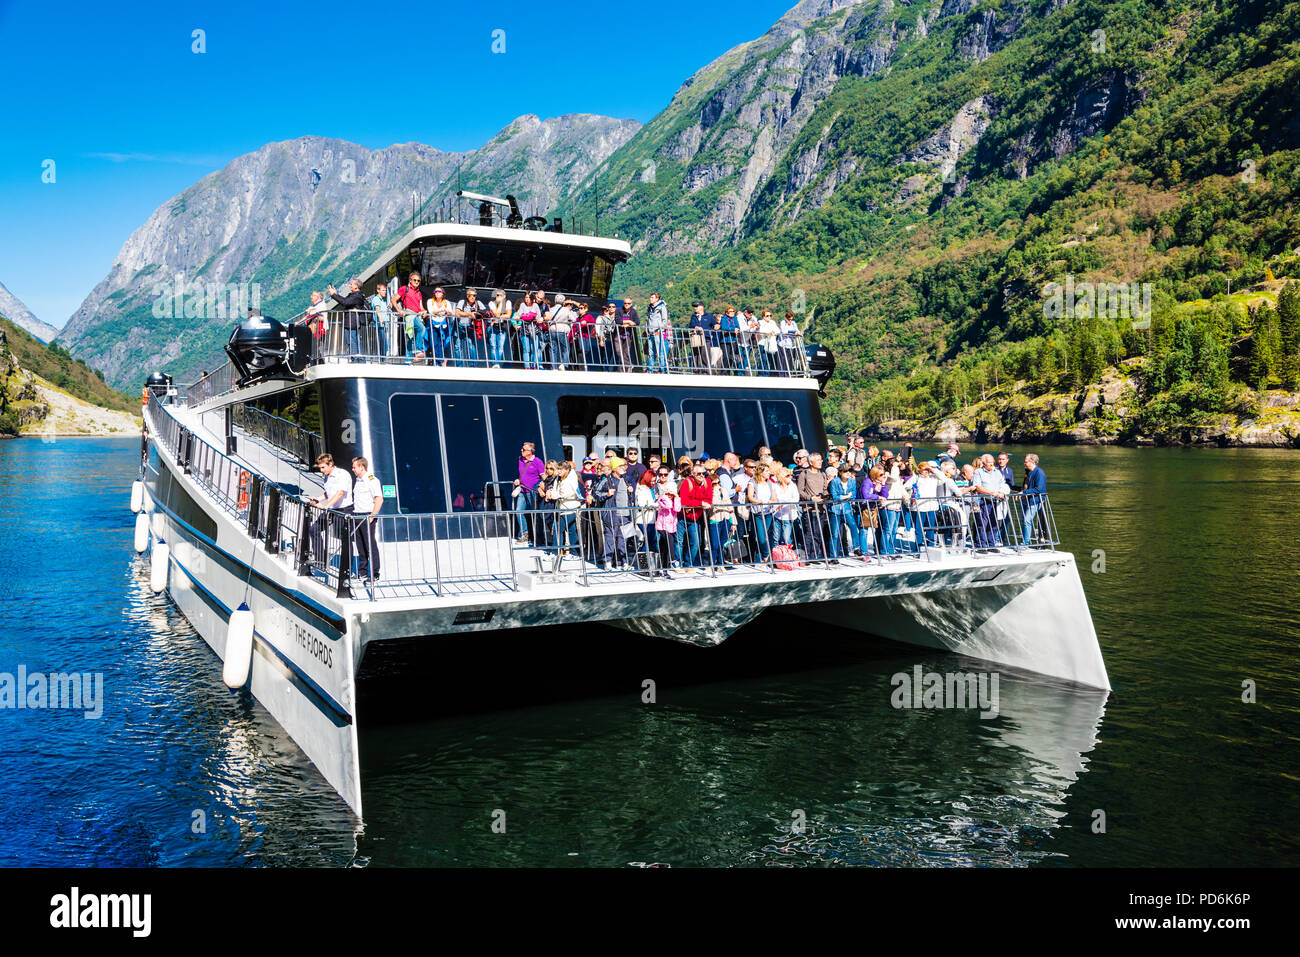 Batterie betriebene Fahrgastschiff, den ersten seiner Art, in den engen und berühmten norwegischen Fjord Naeroyfjorden, auf der Liste des Unesco Weltkulturerbes. Stockfoto